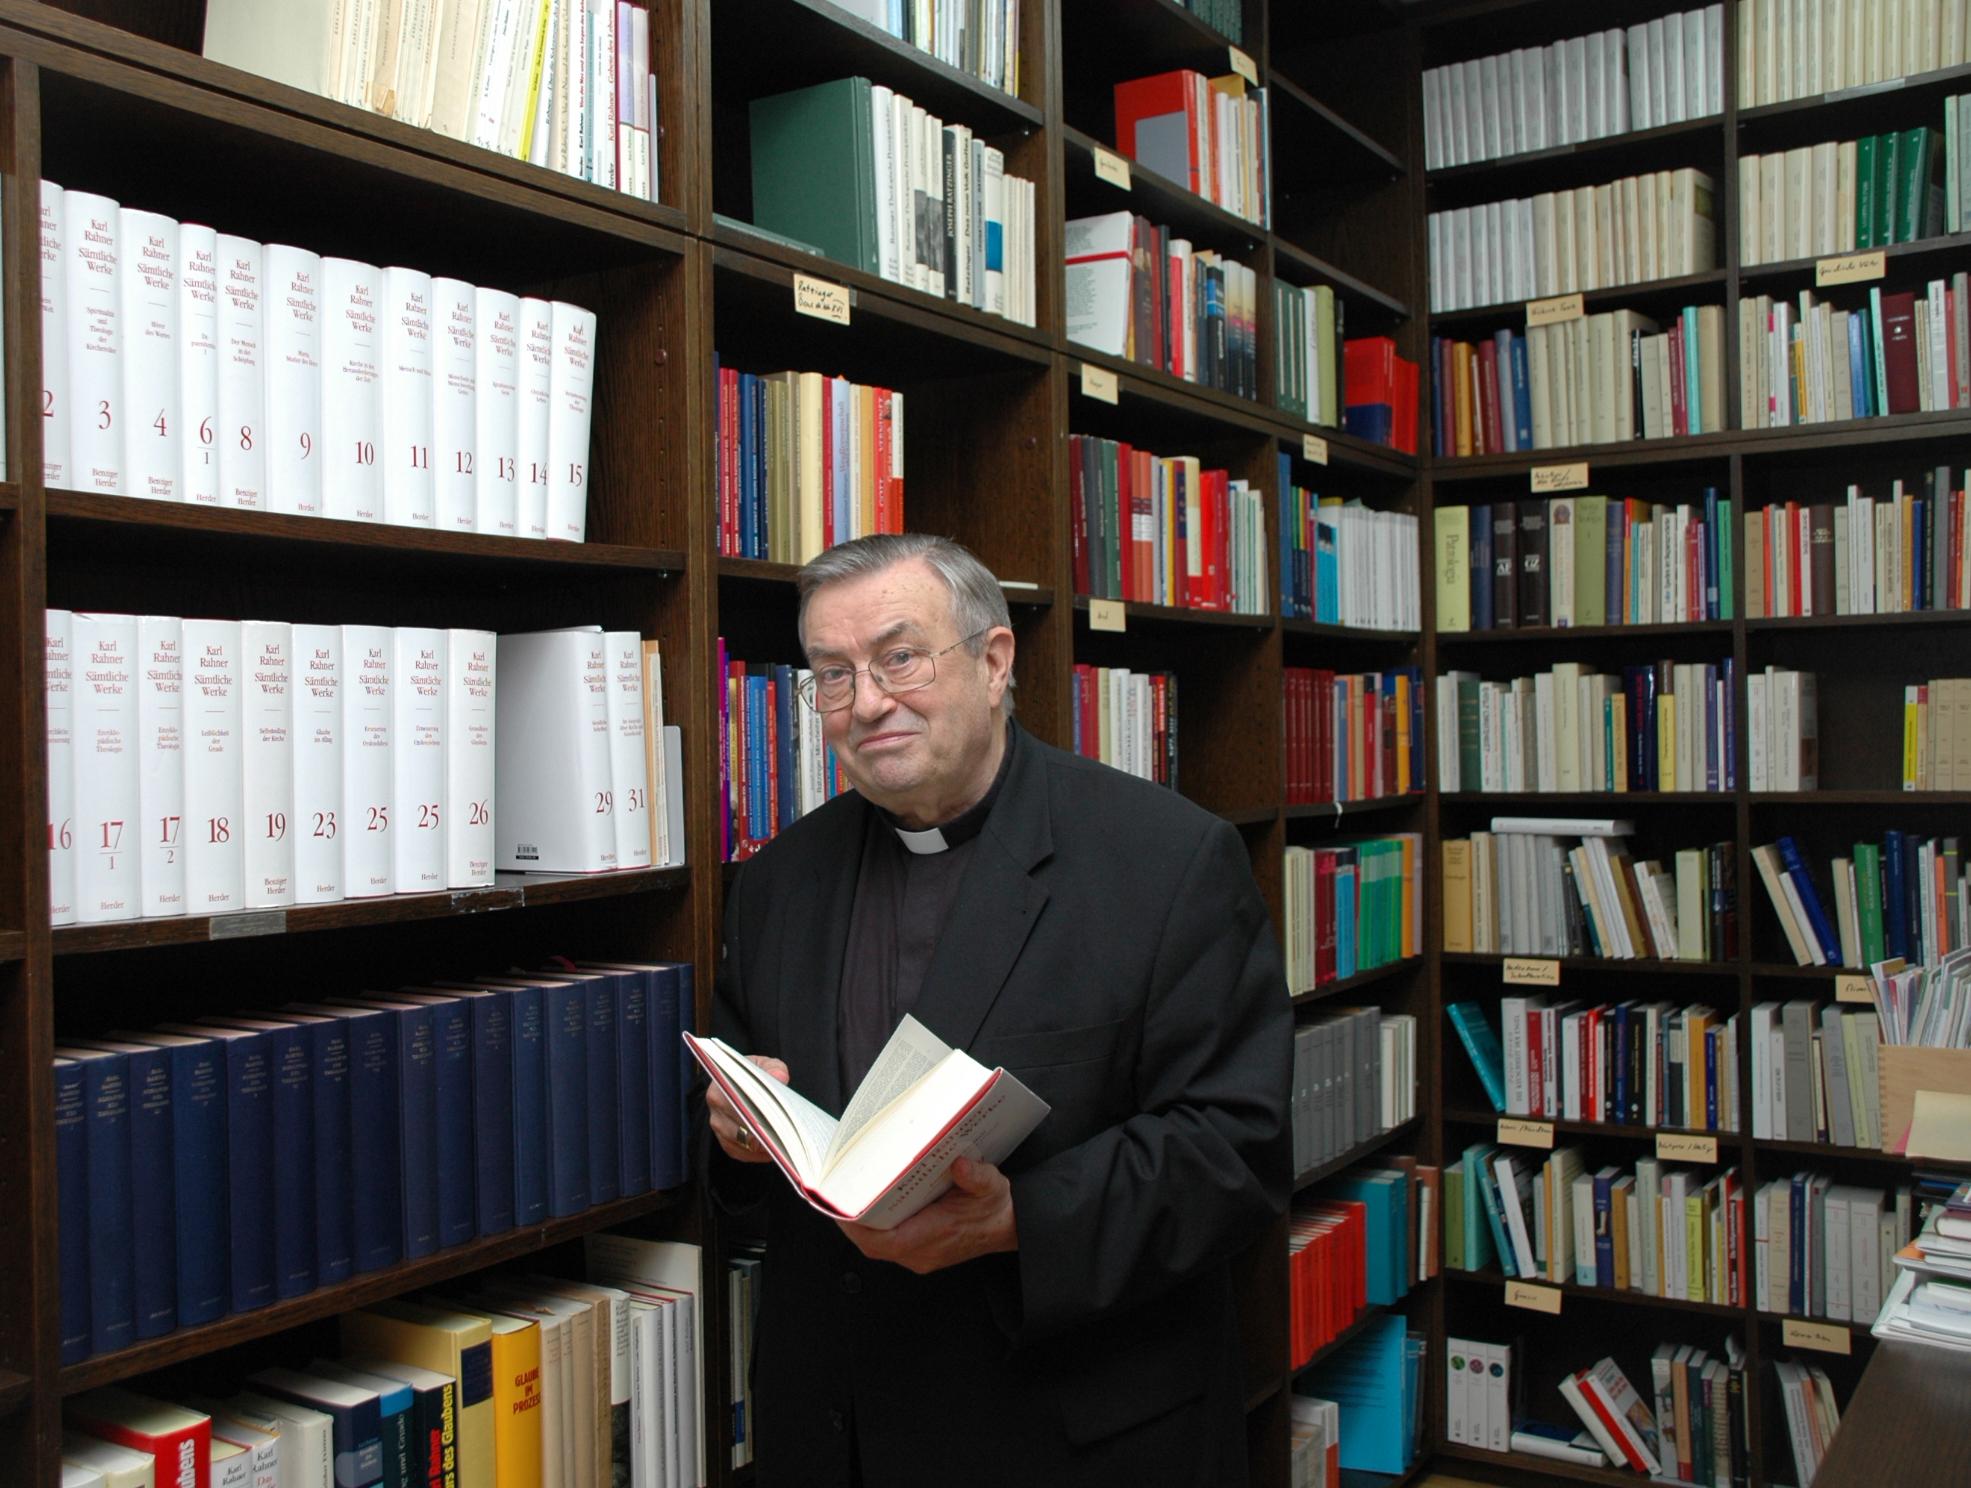 Kardinal Karl Lehmann in seiner Bibliothek im Mainzer Bischofshaus. Das Bild stammt aus dem Jahr 2008.